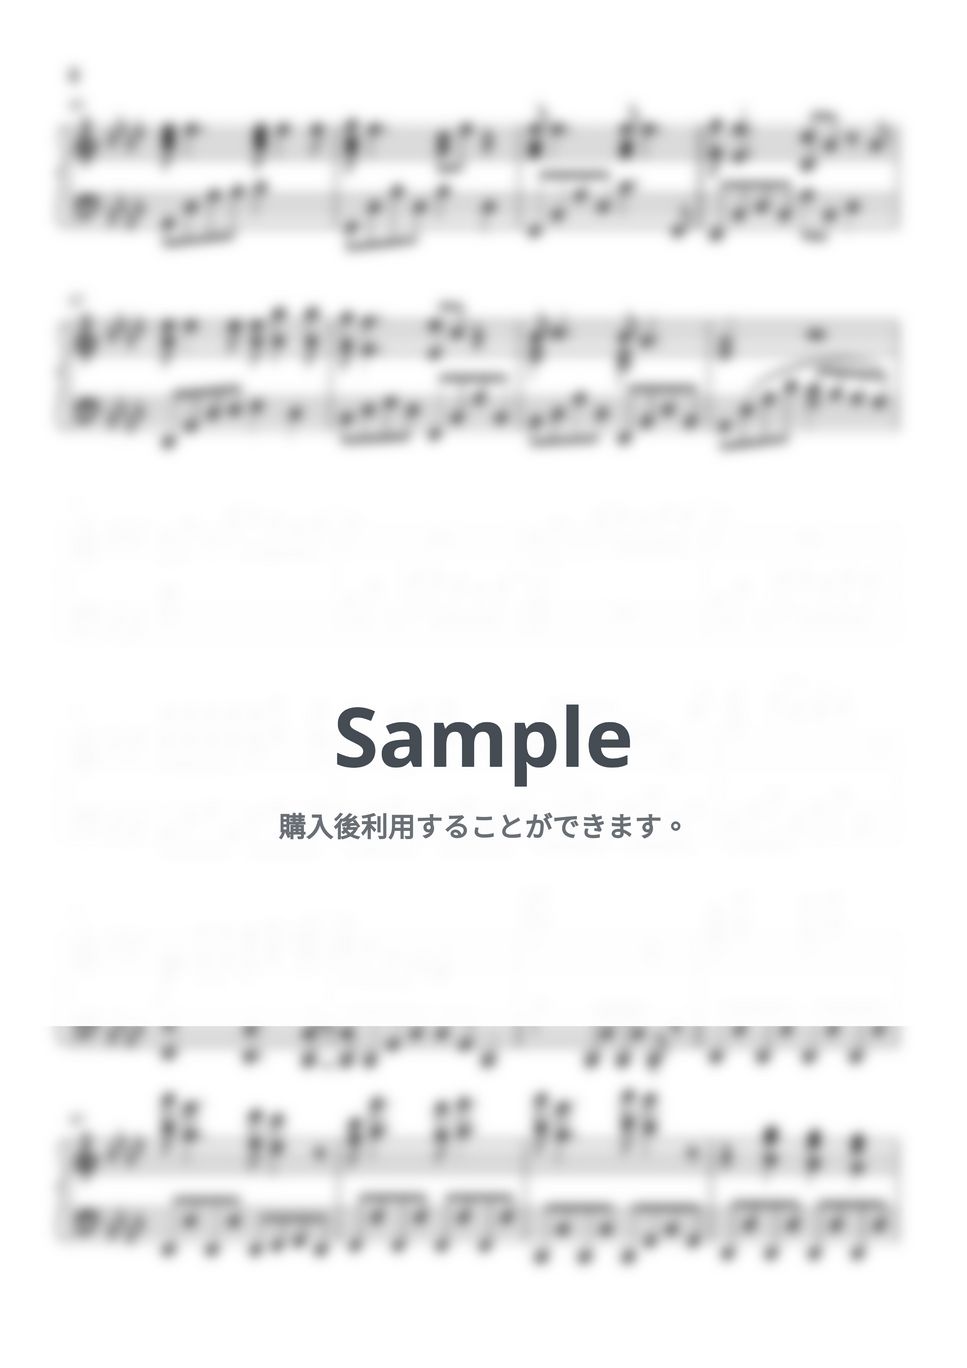 乃木坂46 - Monopoly (ピアノソロ/新曲) by やすpiano